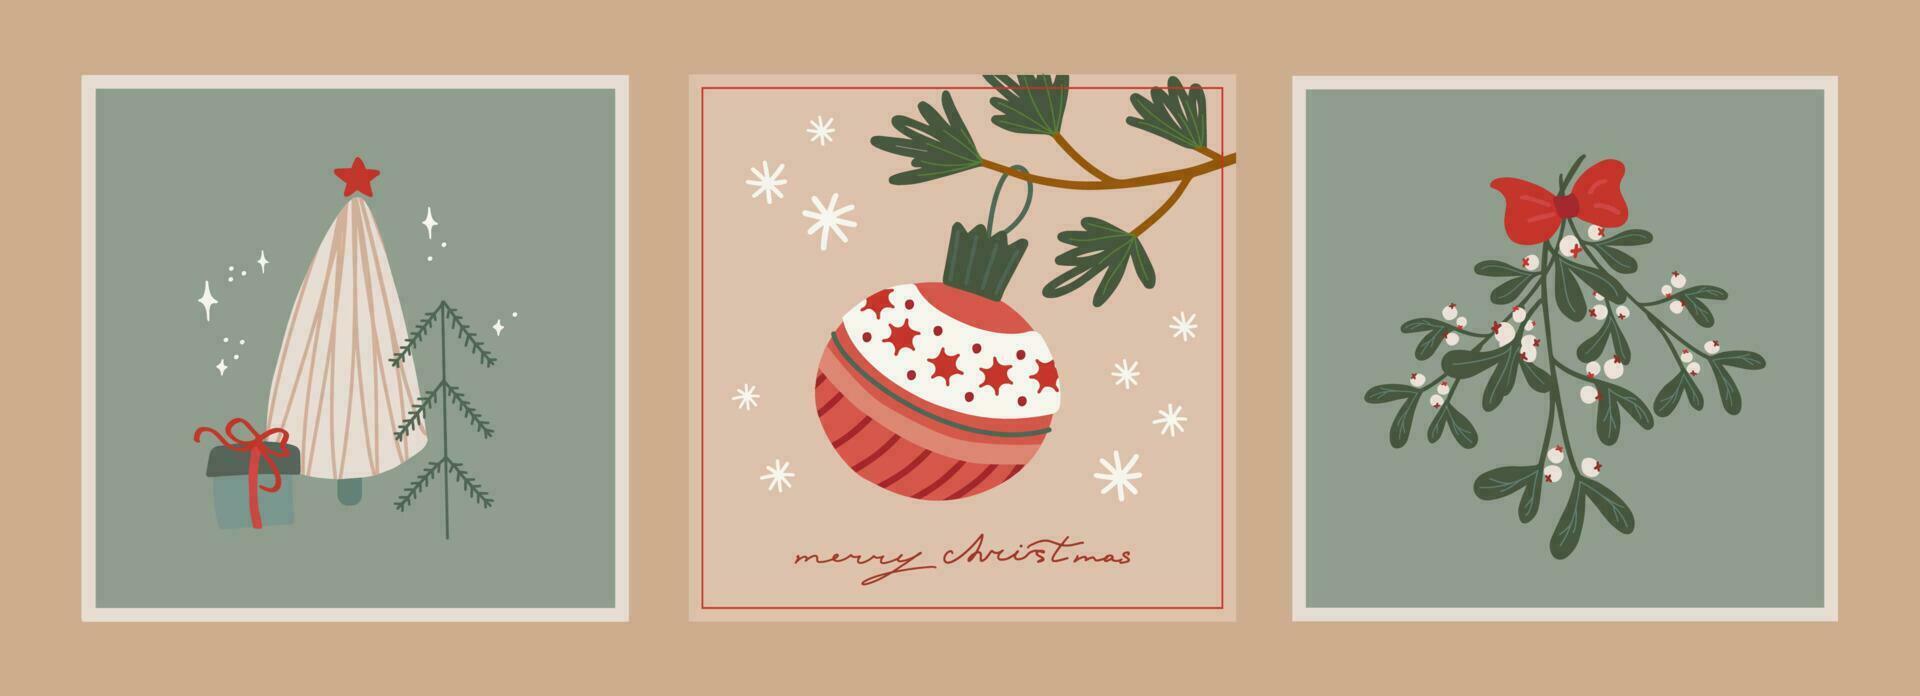 uppsättning av jul och ny år kort med hand dragen illustrationer av jul symboler i retro stil vektor